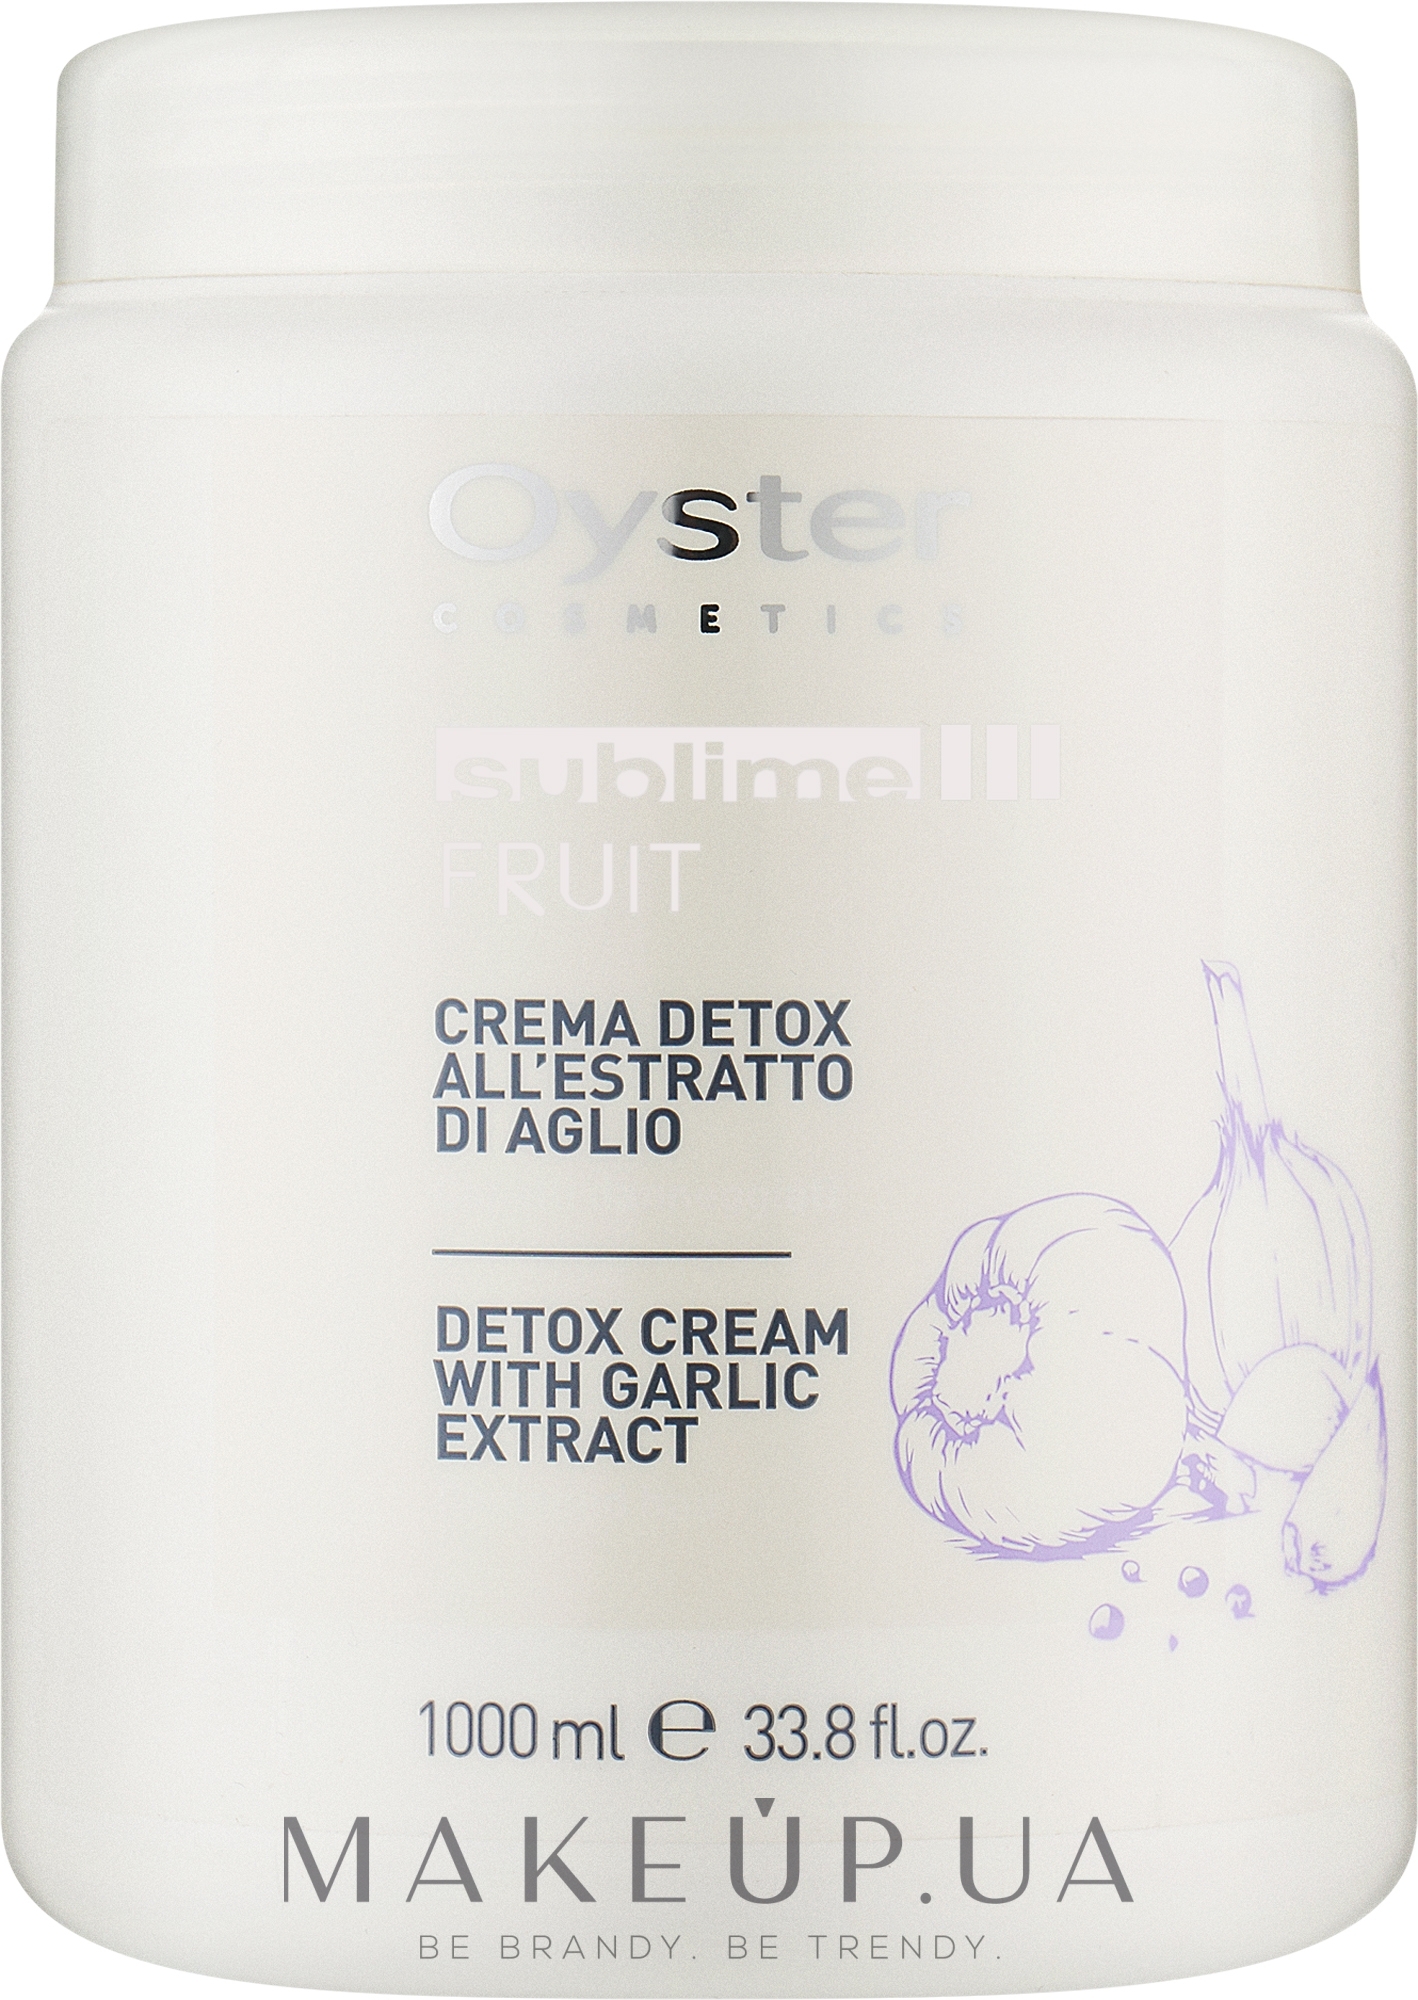 Чесночная детокс-маска для поврежденных волос - Oyster Cosmetics Sublime Fruit Detox Cream With Garlic Extract — фото 1000ml